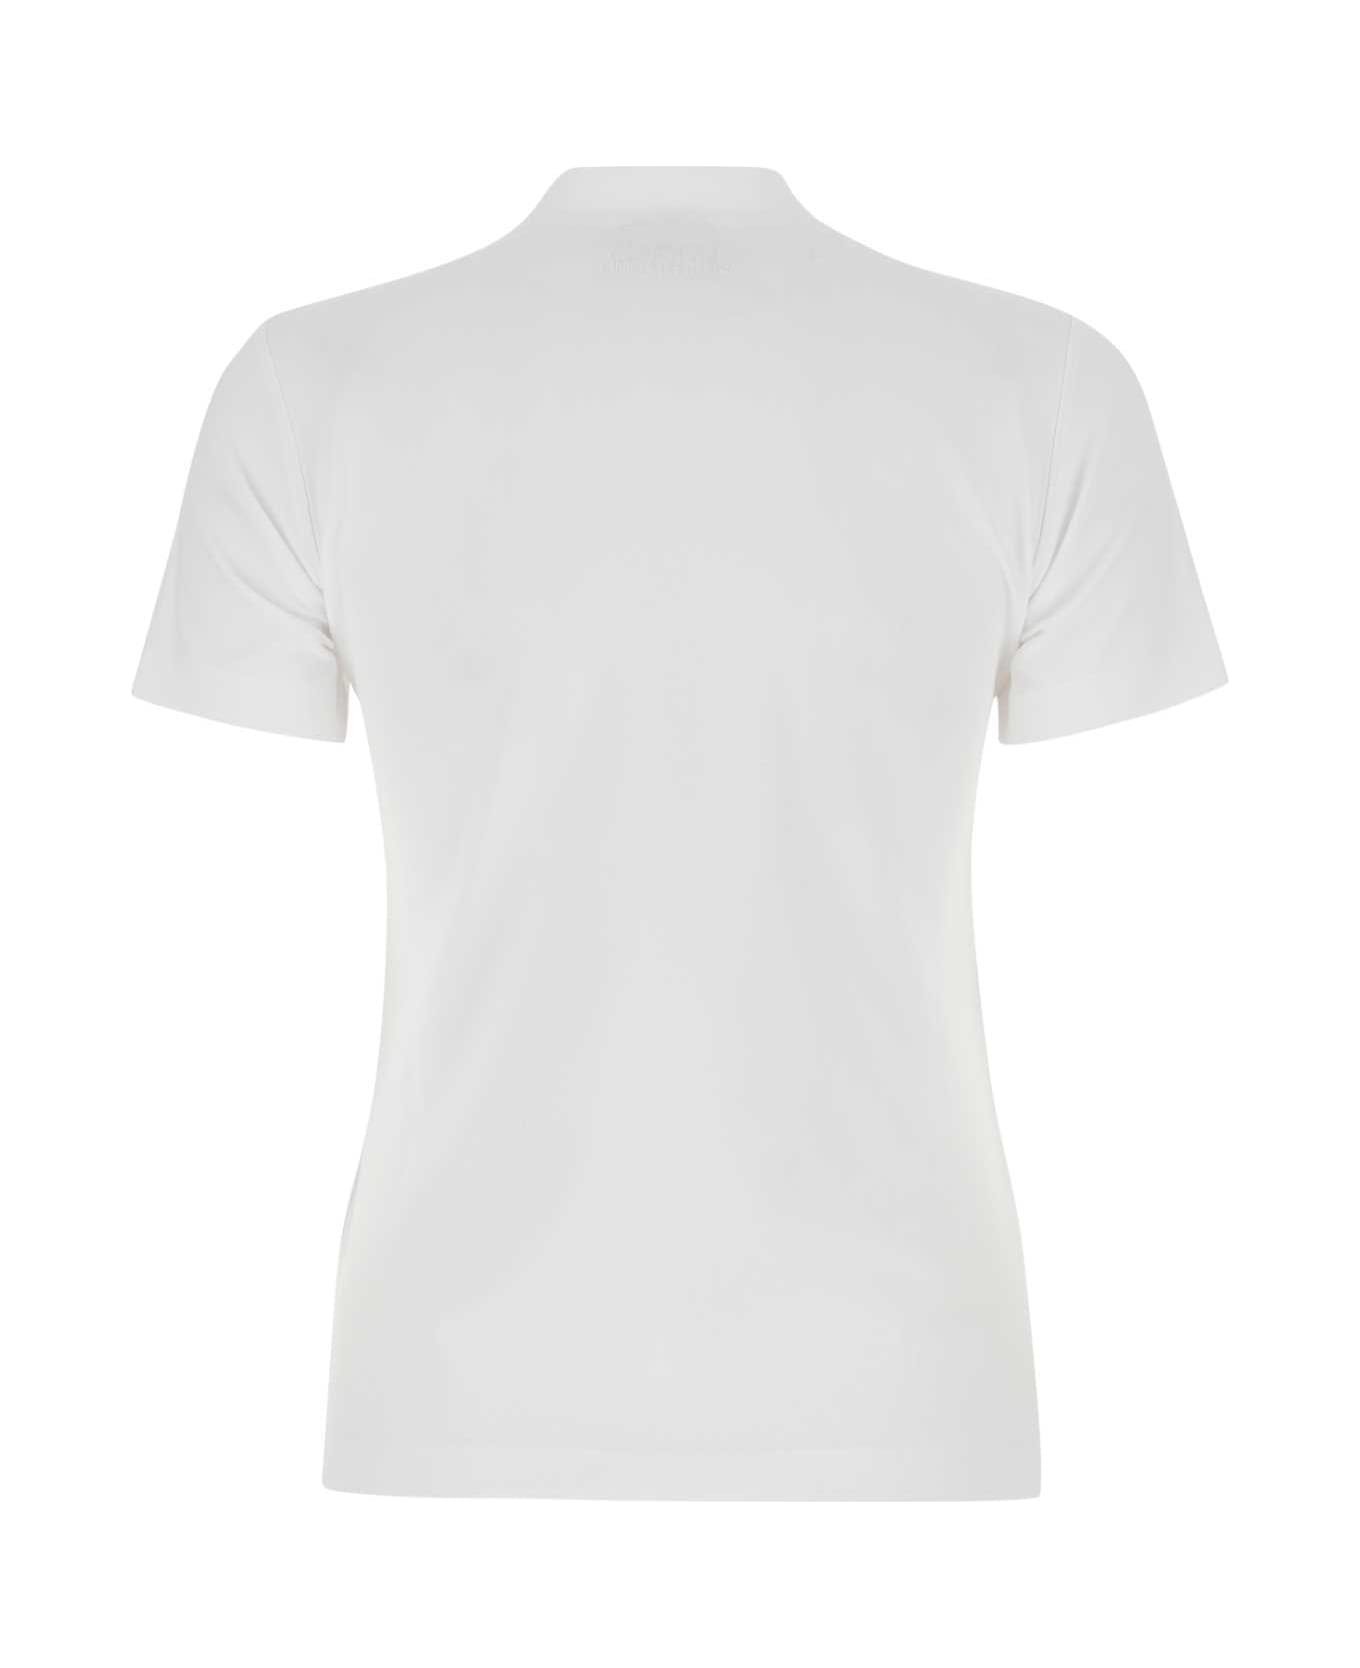 VETEMENTS White Cotton T-shirt - WHITE Tシャツ